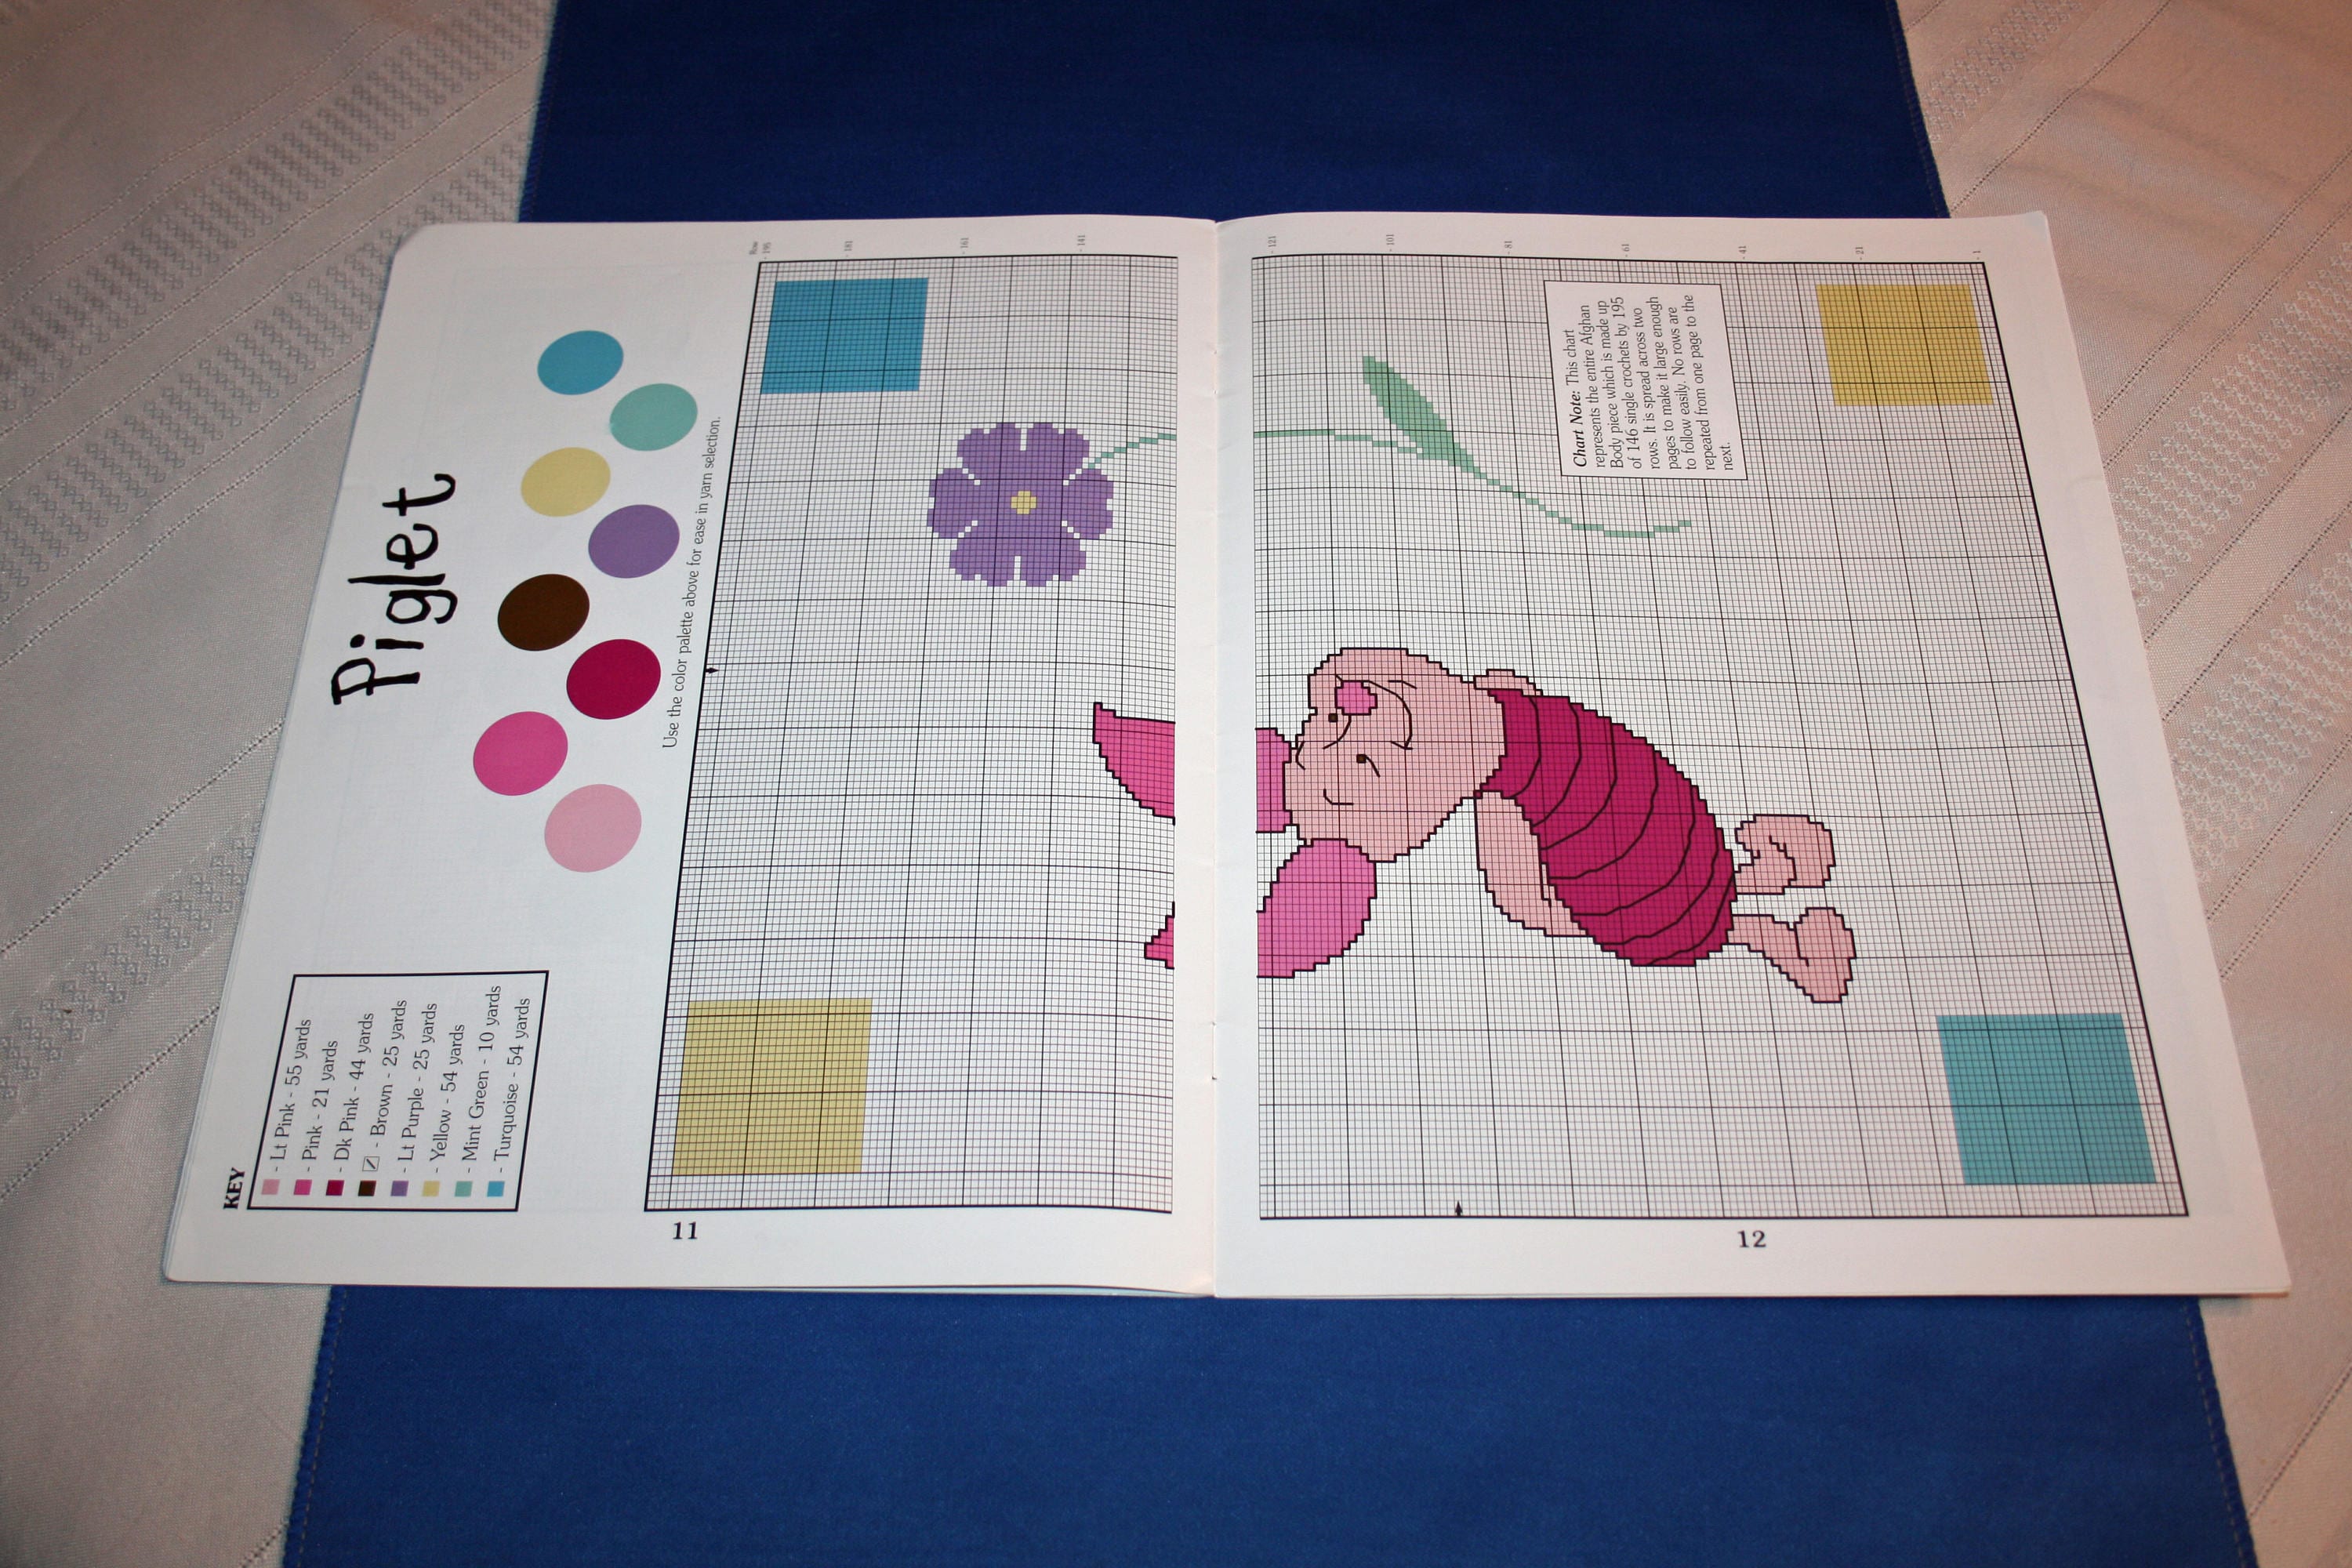 Disney crochet afghan pattern booklet Pooh Snuggle-ups ~ eeyore tigger piglet B 